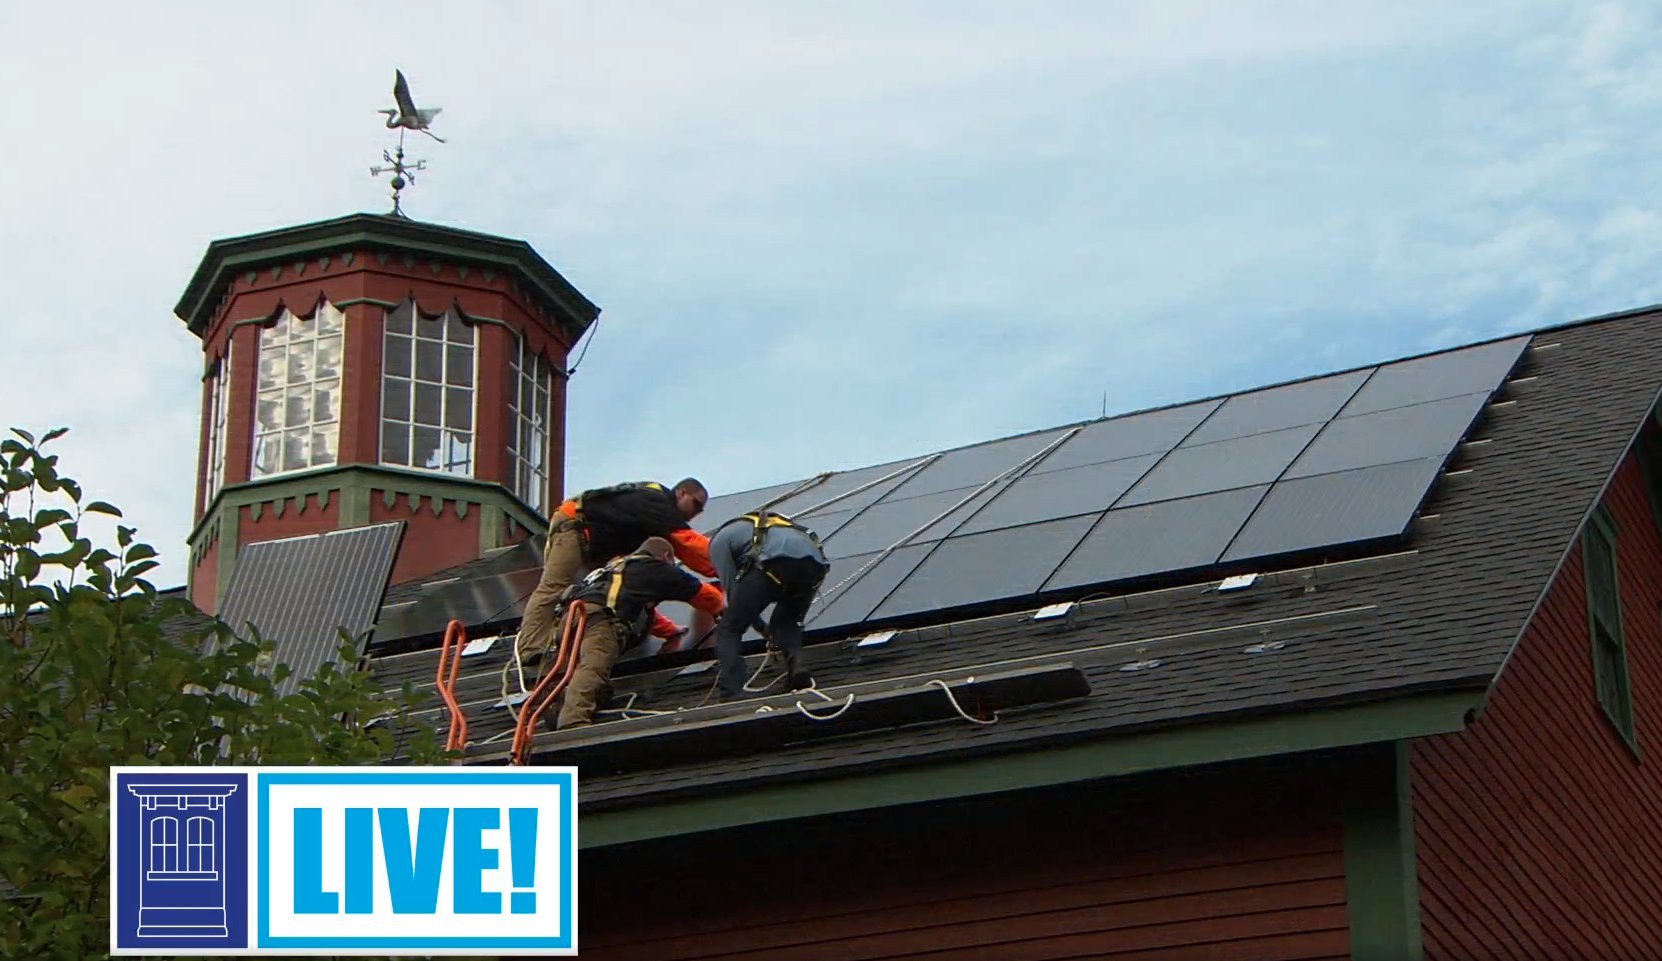 在屋顶上安装太阳能电池板